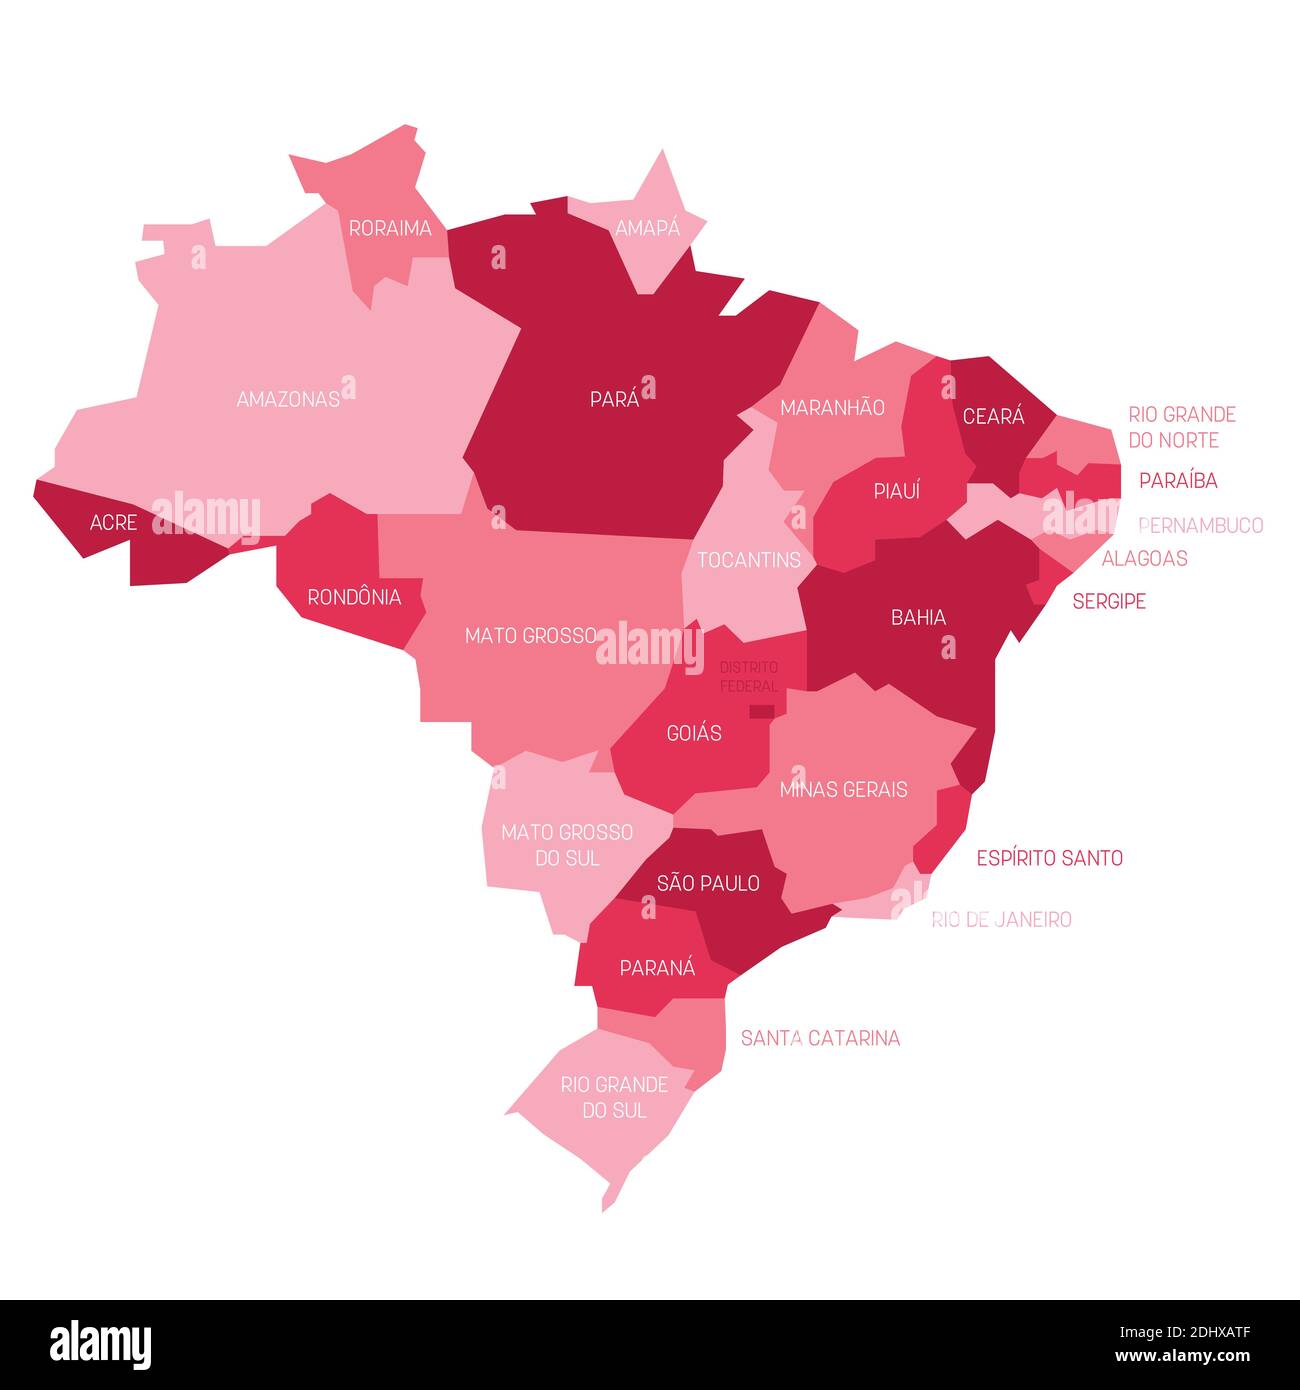 Rosa politische Karte von Brasilien. Verwaltungsabteilungen - Staaten. Einfache flache Vektorkarte mit Beschriftungen. Stock Vektor